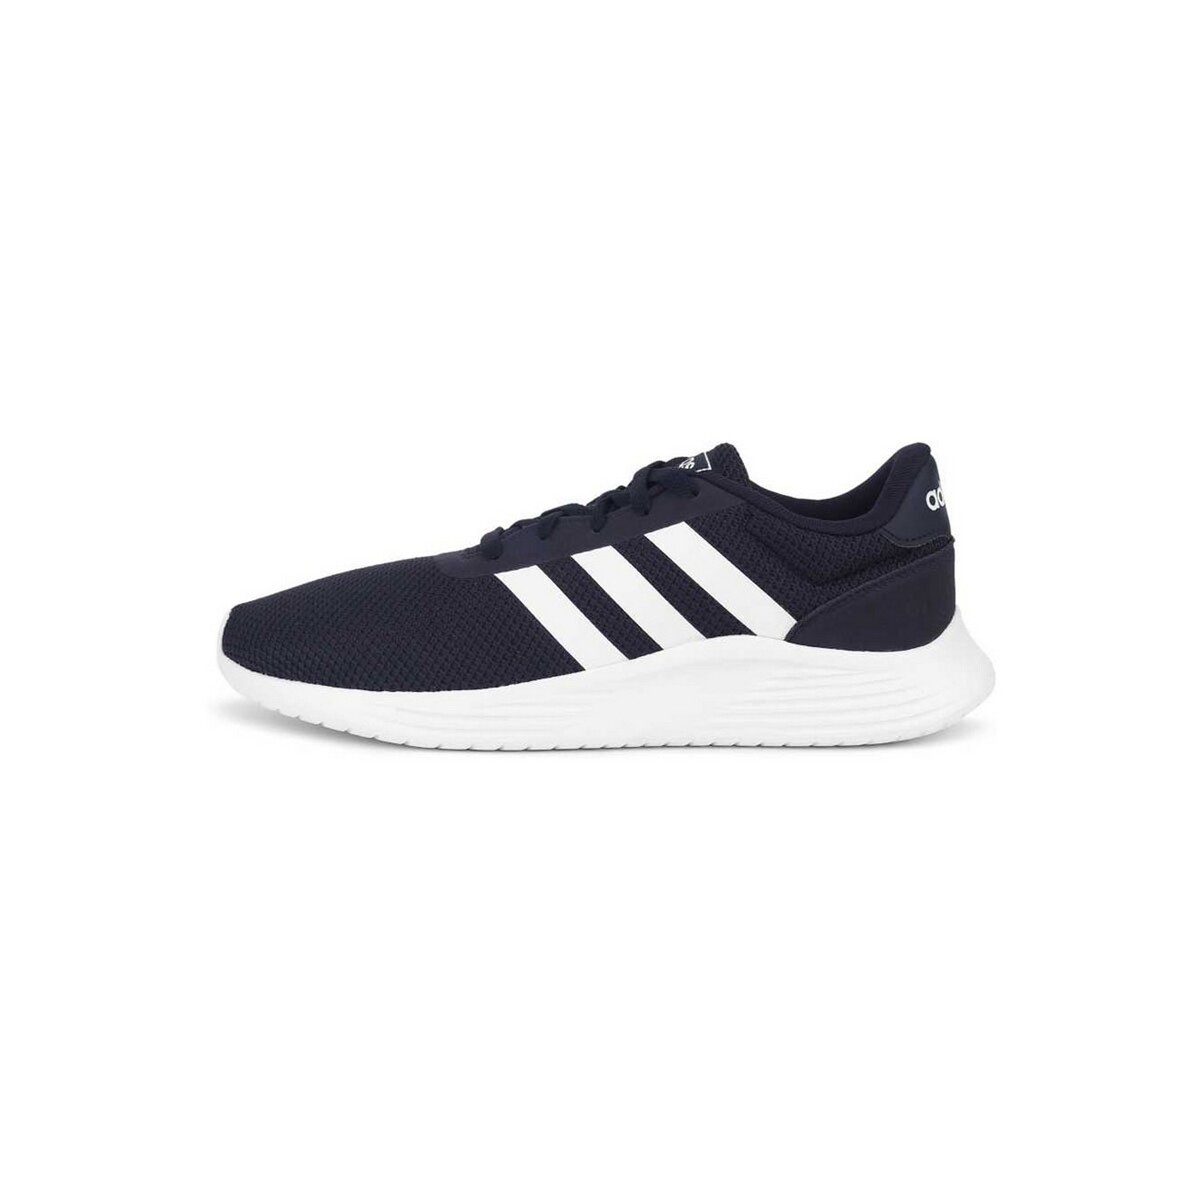 Adidas Mens Sports Shoes EG3281, 10